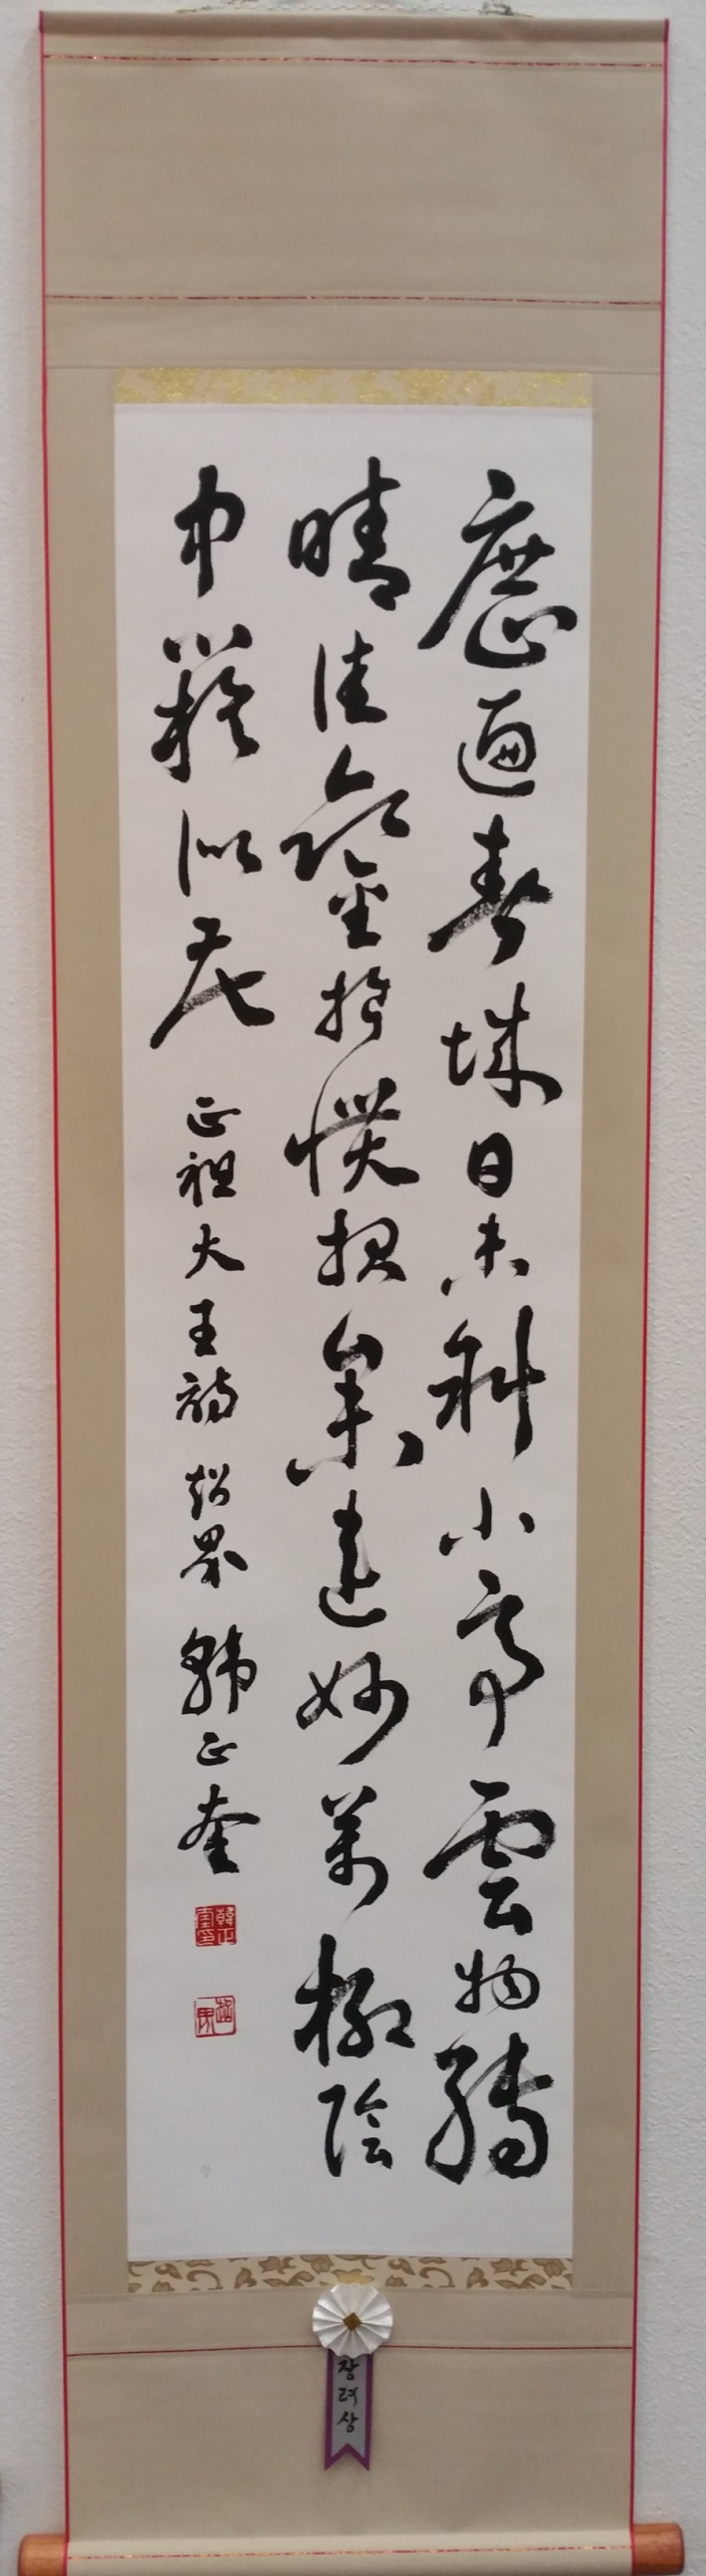 1797년 1월 29일 수원화성 방화수류정에서 정조대왕이 쓴 시, 이 사진은 기자가 정조대왕 시를 초서로 쓴 것이다.